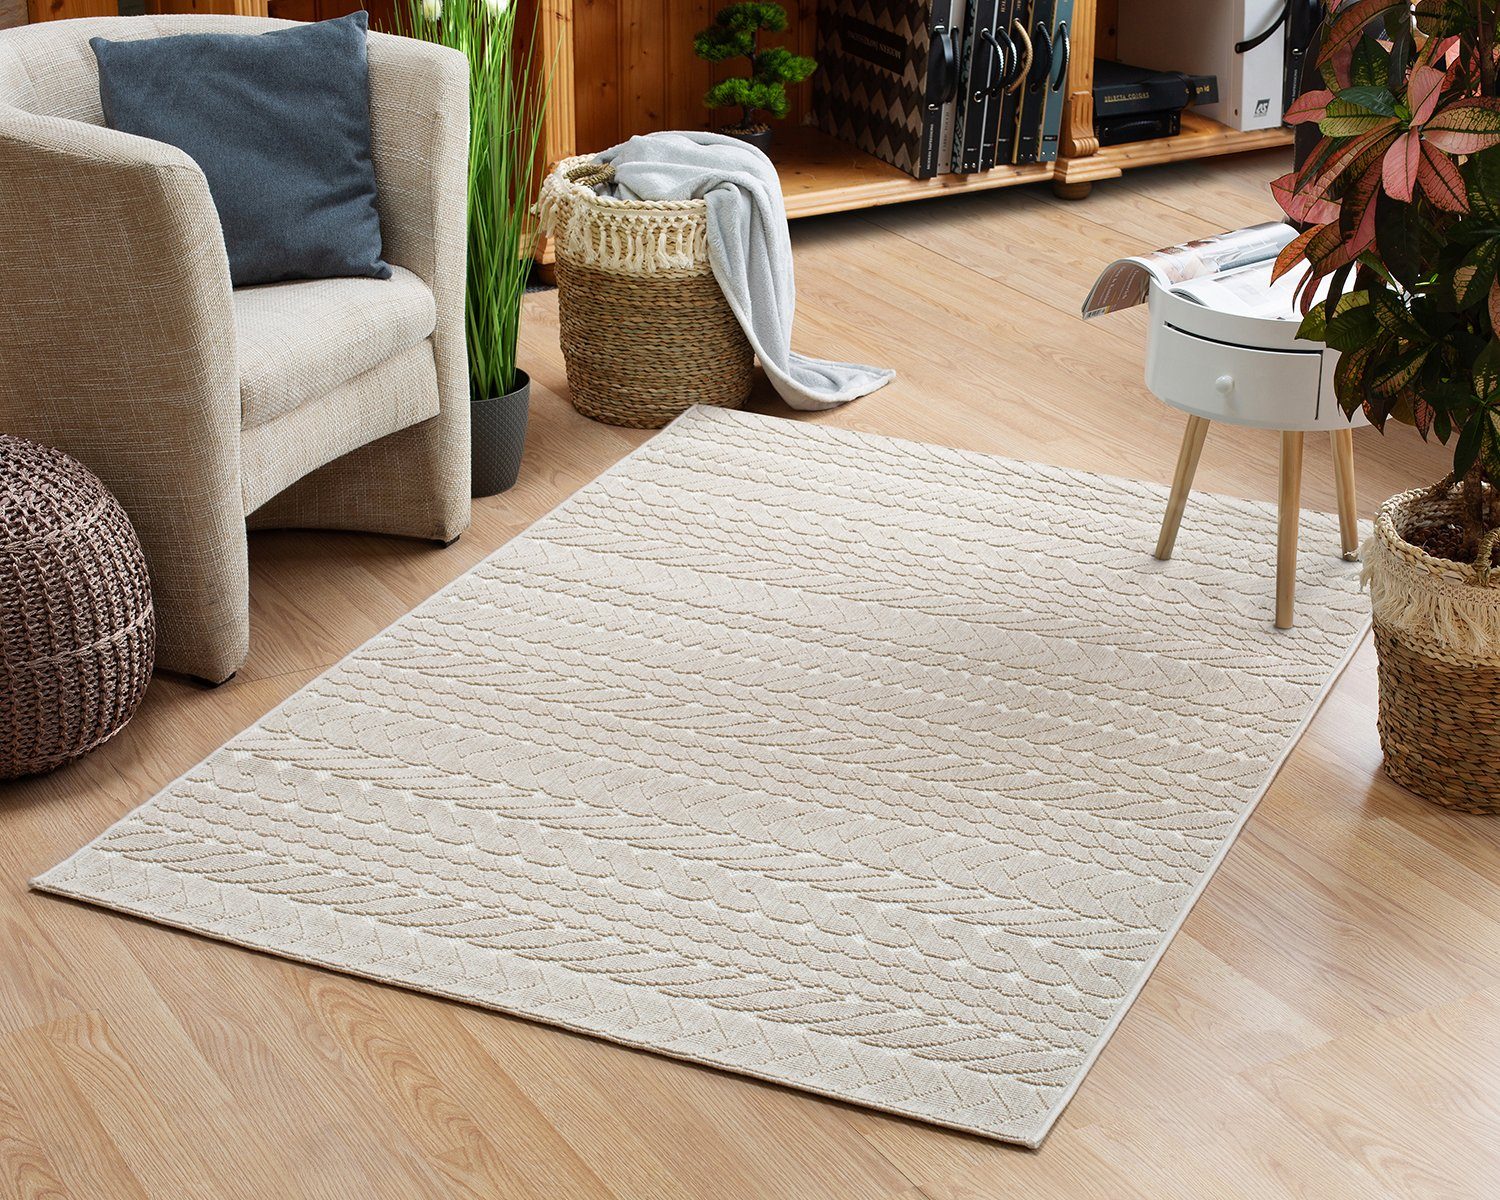 Teppich In- und Outdoor-Teppich Braided Pattern aus Kunststoff für Innen und Außen, DomDeco Creme-beige